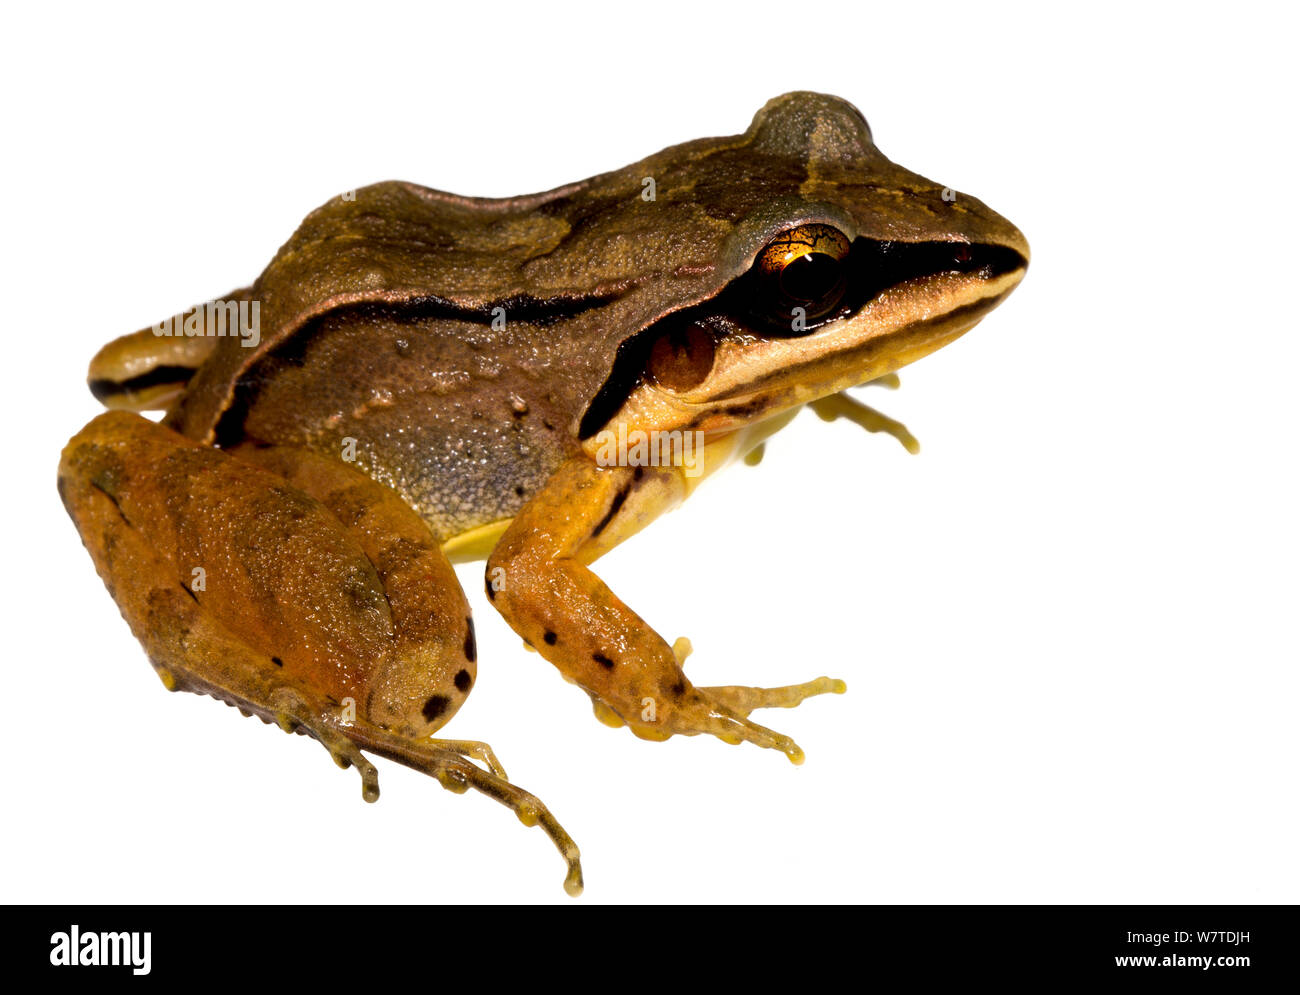 Graben Frosch (Leptodactylus mystaceus) die Kaw Berge, Französisch-guayana. Meetyourneighbors.net Projekt Stockfoto